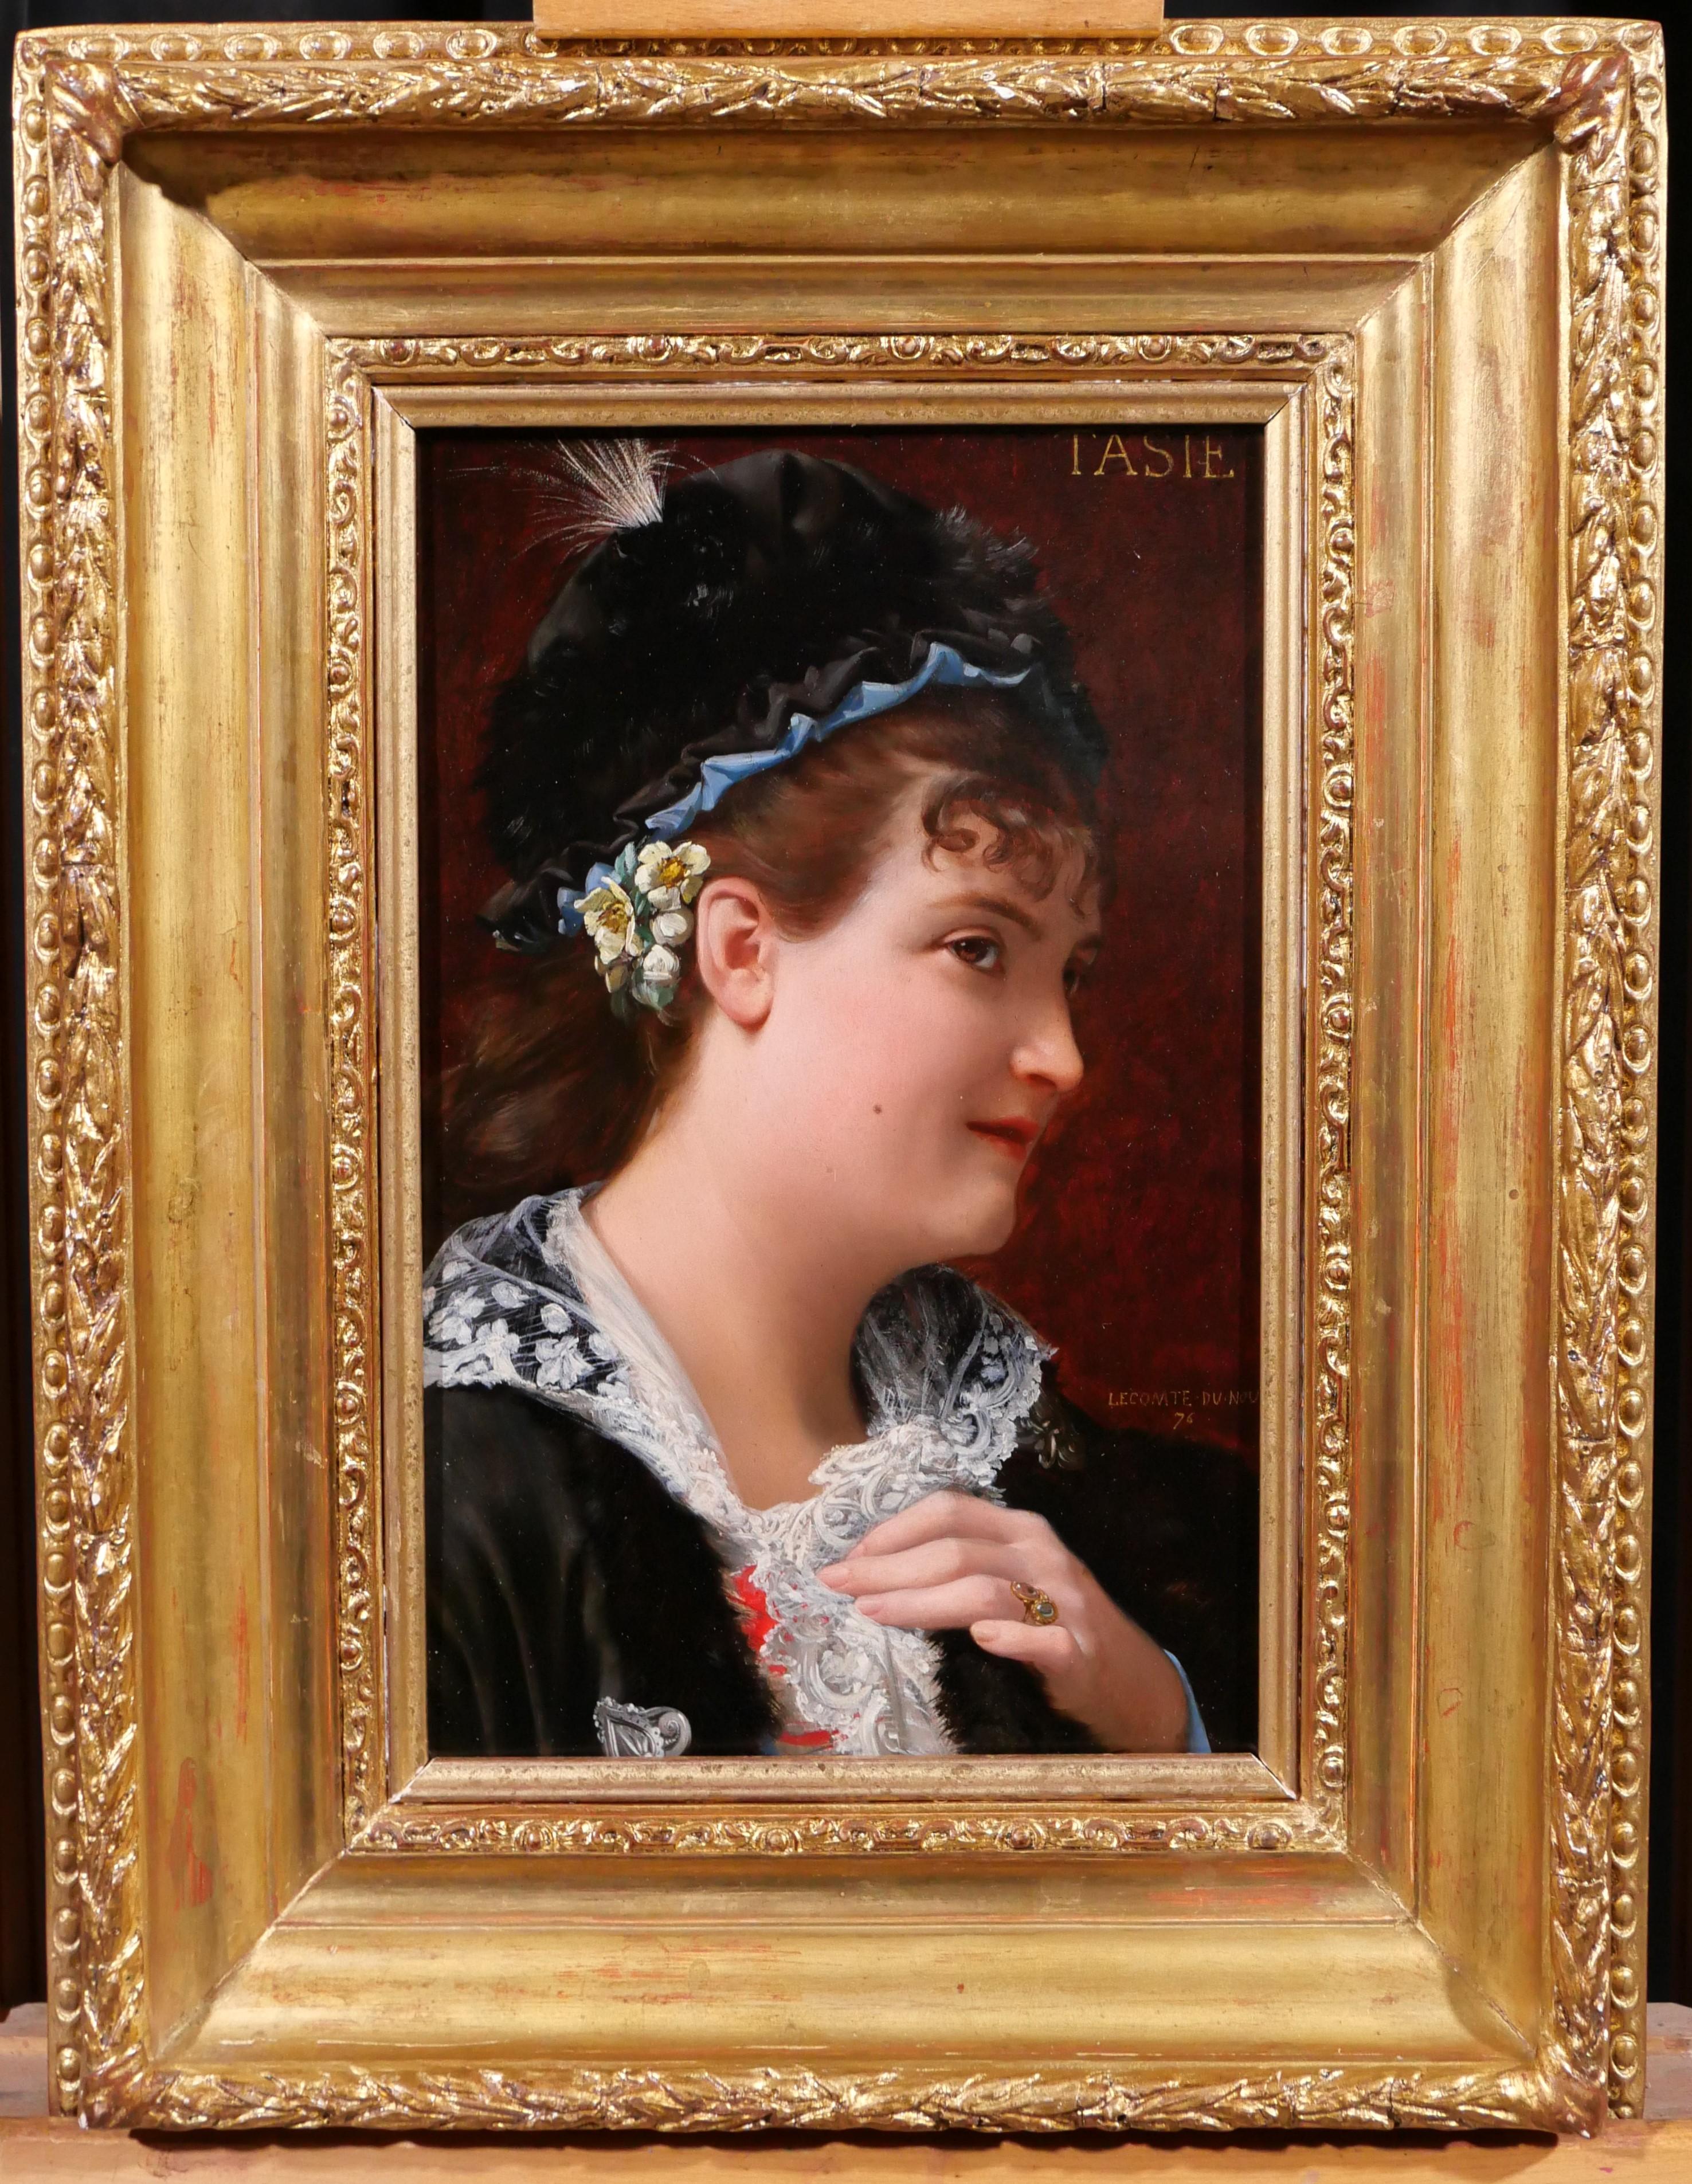 Portrait of a woman, Tasie - Painting by Jean Jules Antoine LECOMTE DU NOÜY